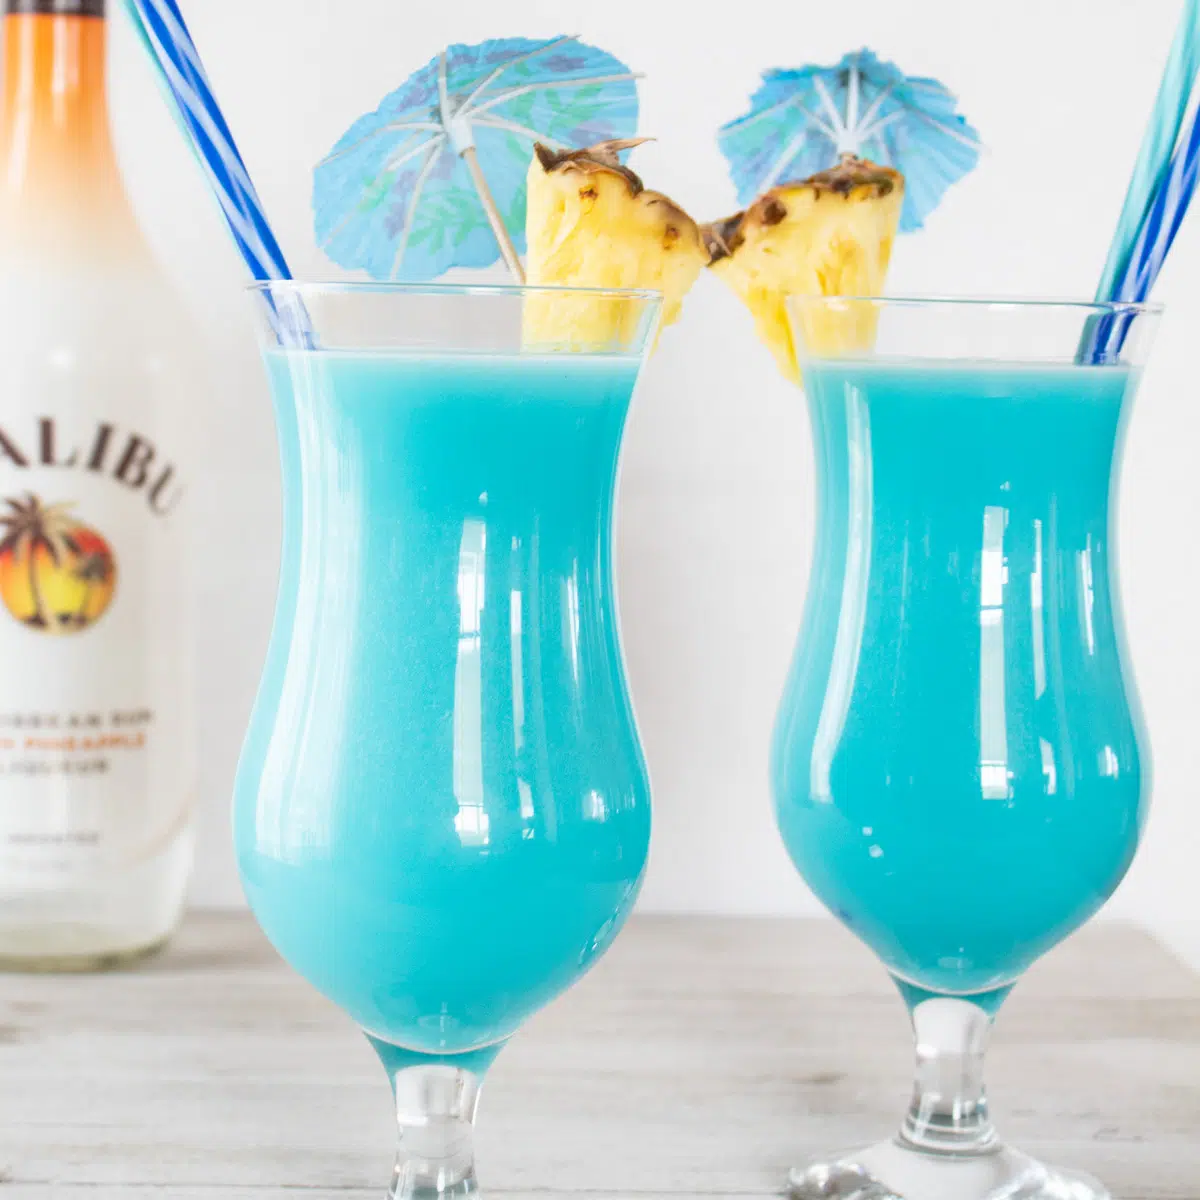 Fryst blå hawaiiansk cocktail serverad i orkanglas med ananasgarnering.